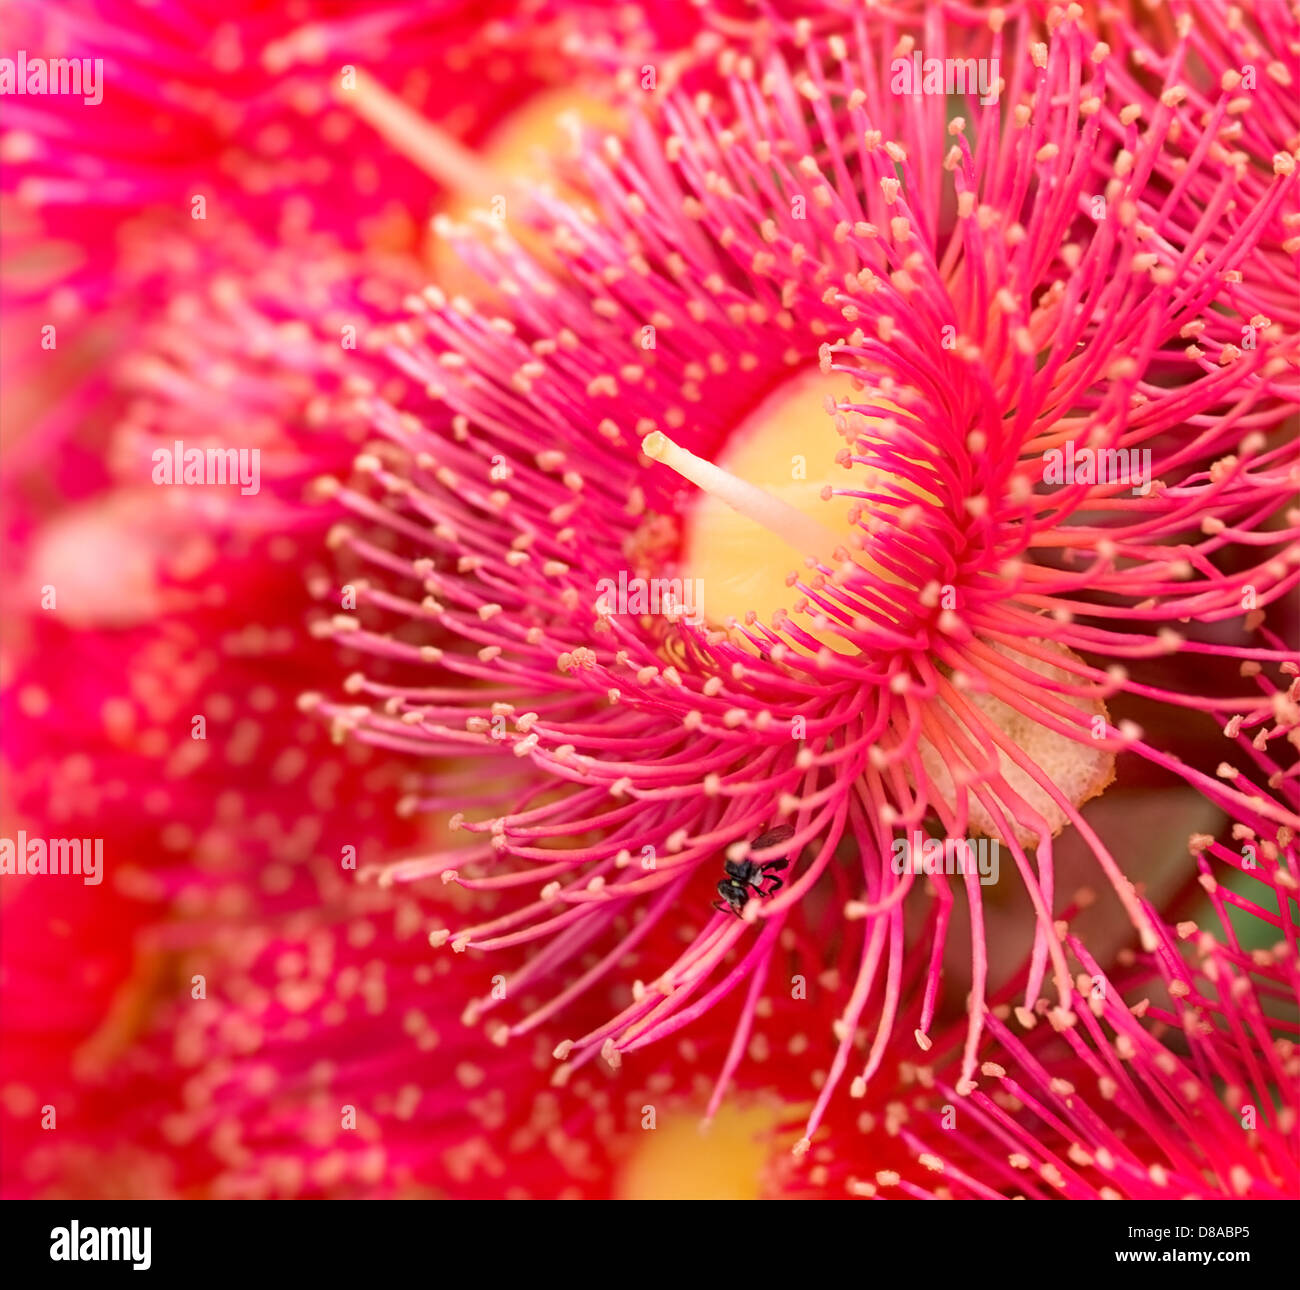 Fleurs rouge vif lumineux de gum tree australien originaire de l'Australie rouge été Phytocarpa Banque D'Images